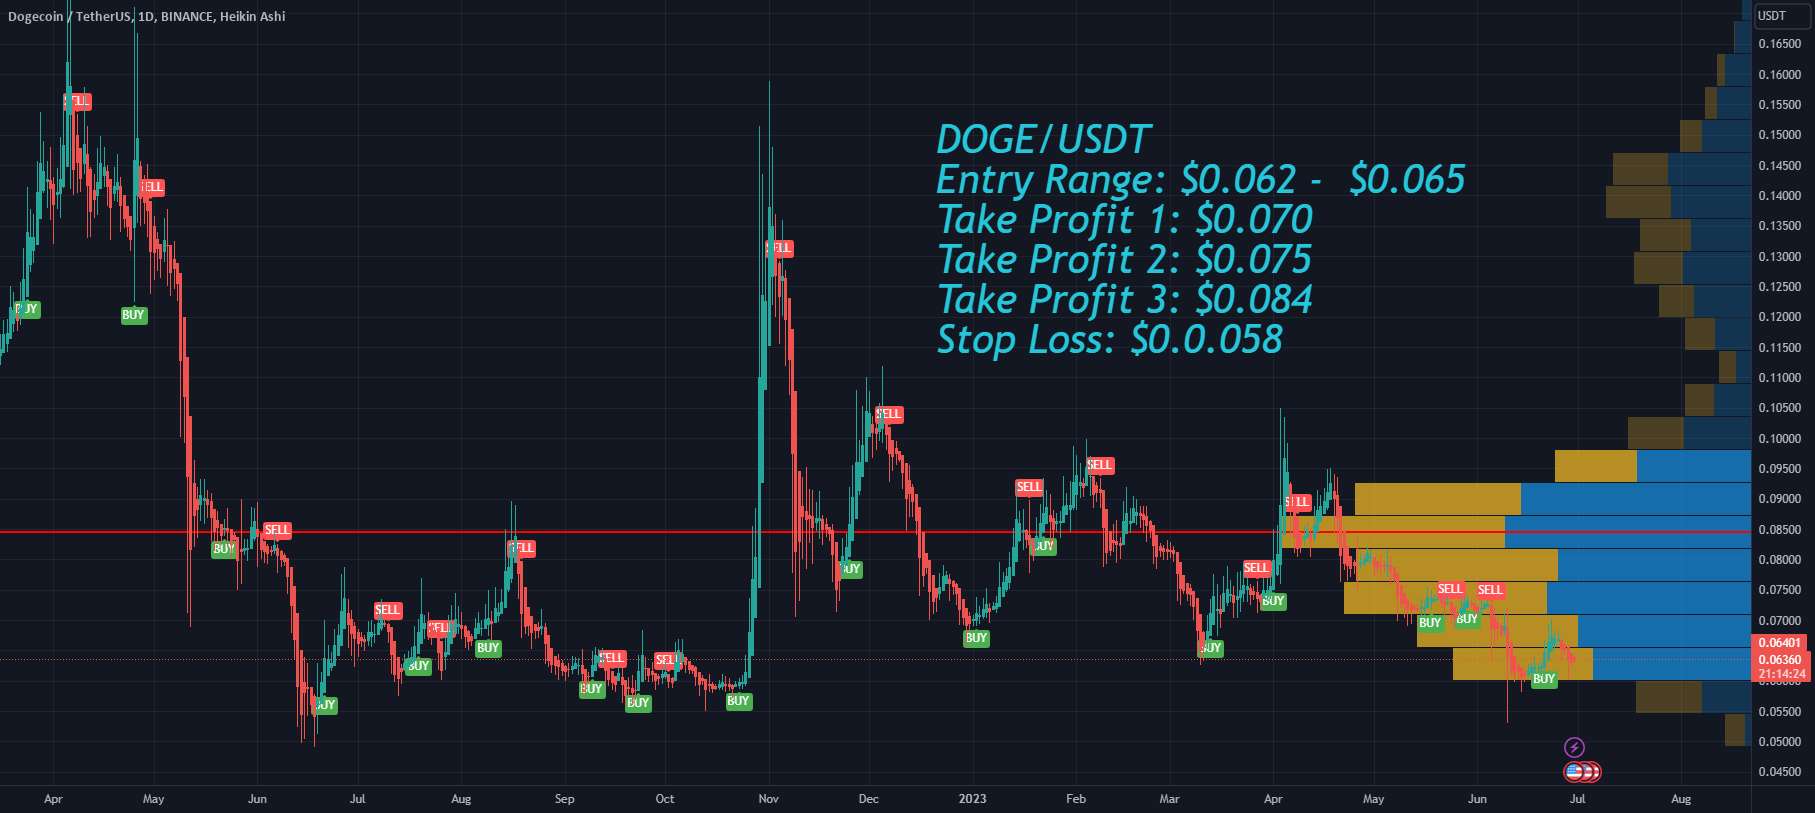  تحلیل دوج کوین - افزایش احتمالی Dogecoin DOGE با بازار سهام